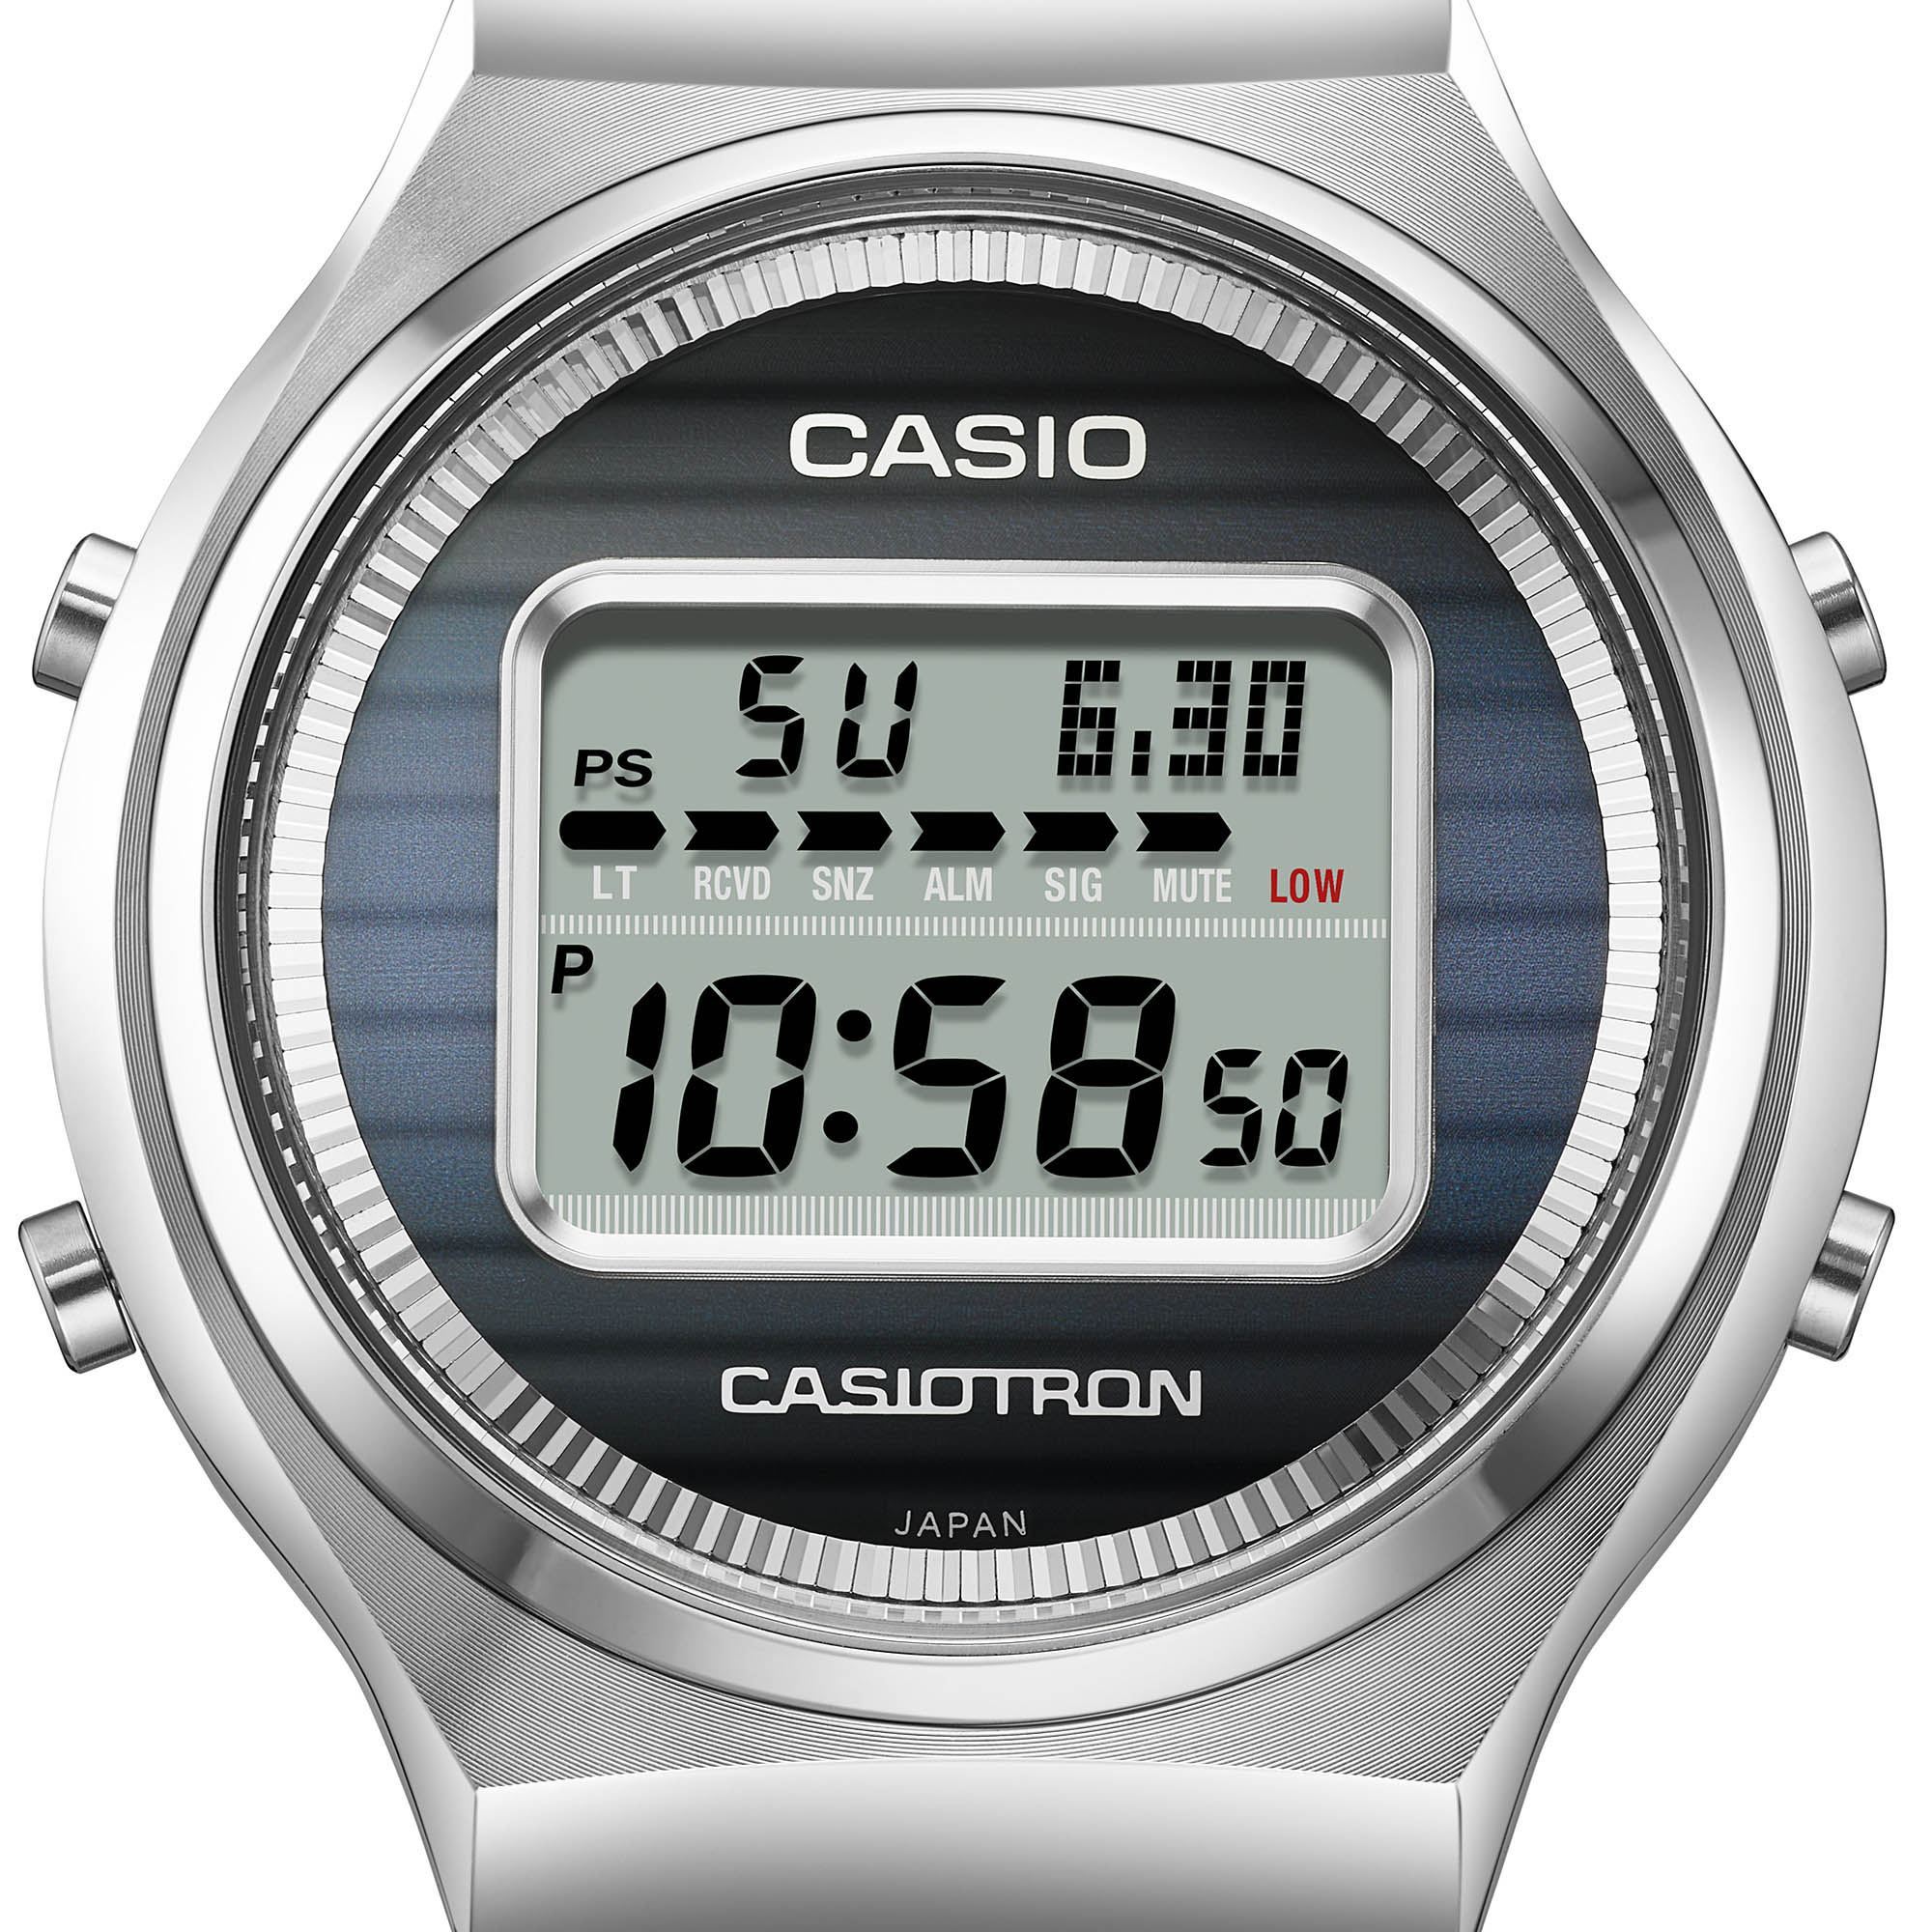 Новый релиз: Лимитированная серия часов Casio Casiotron TRN50-2A празднует 50-летие часового дела